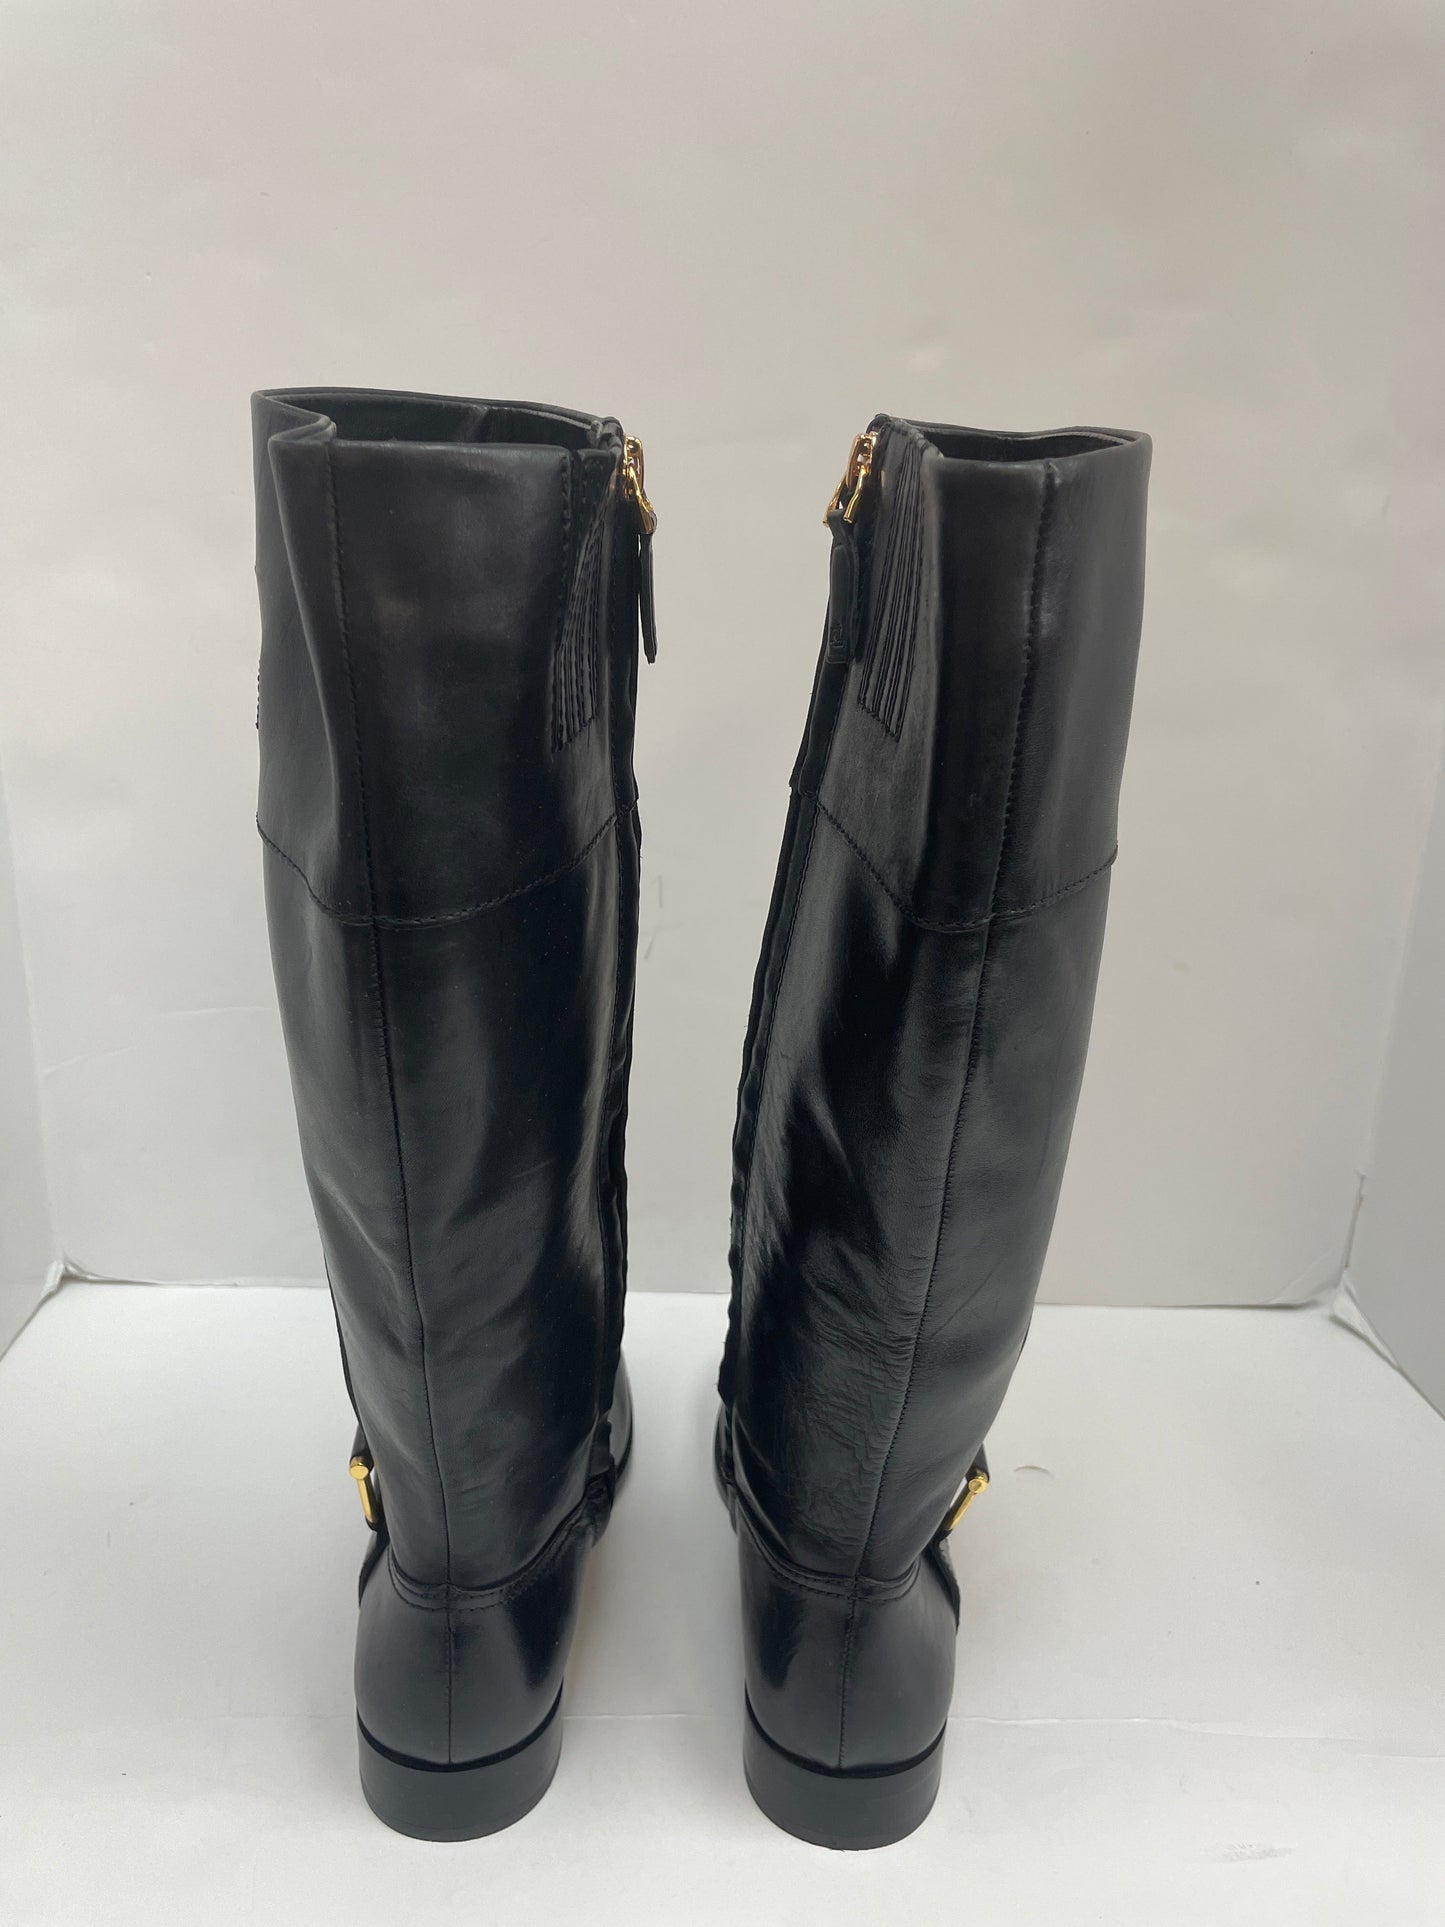 Boots Knee Flats By Ralph Lauren  Size: 5.5